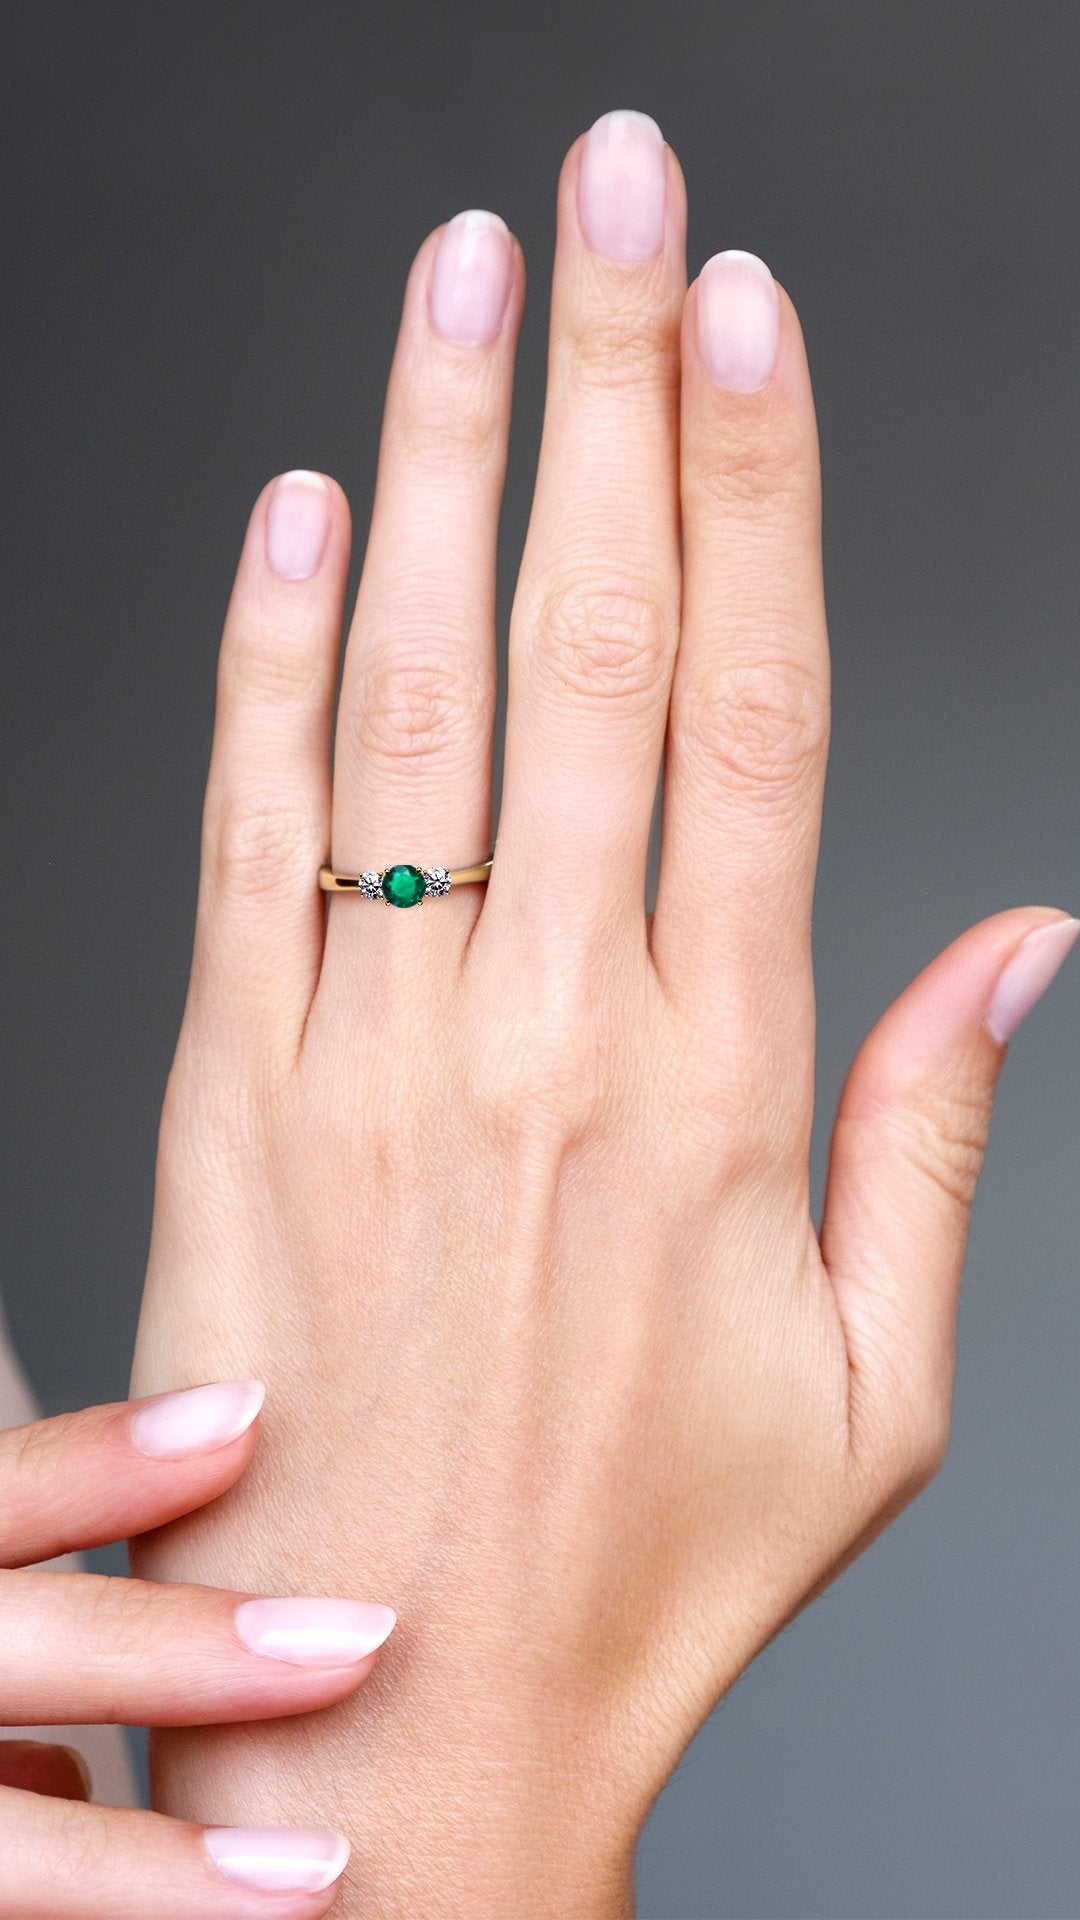 Adeline Ring 18K Rose Gold Emerald